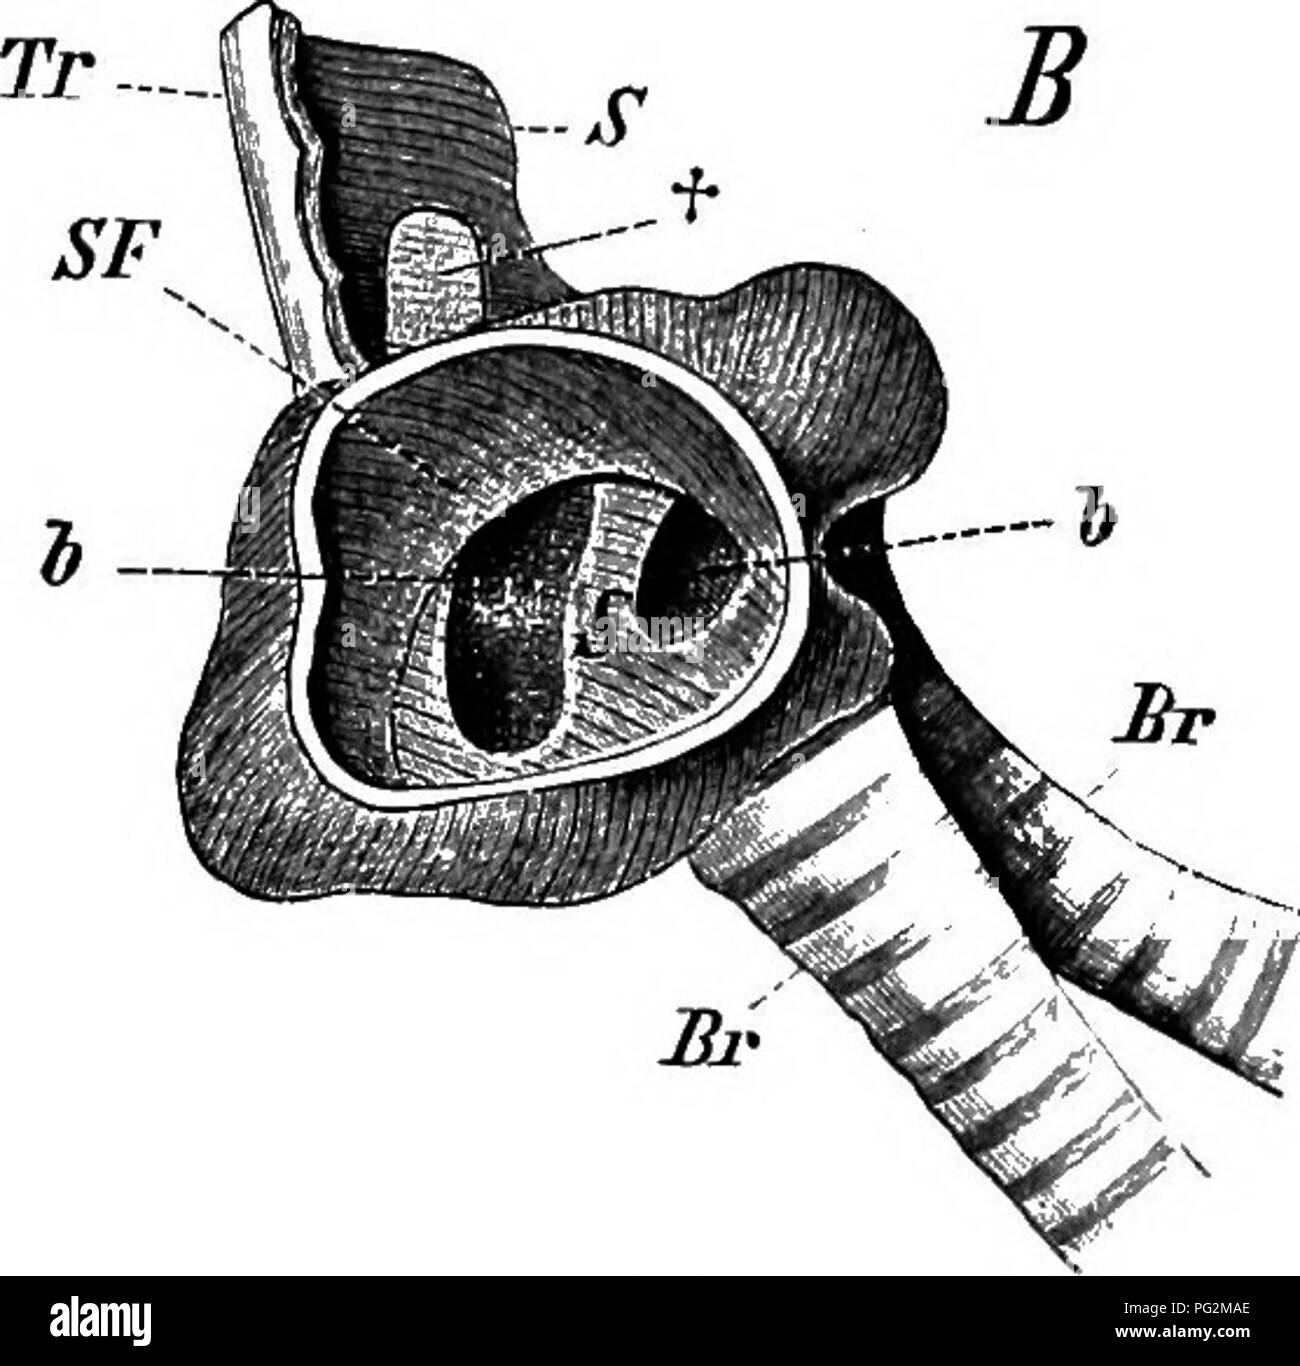 . Elementi di anatomia comparata dei vertebrati. Anatomia di confronto. La fio. 232.-laringe dei maschi di anatra. (.^4, esterno, e B, vista interna.) Tr, trachea; Br, bronco; T, "timpano"; S, pessulus, da cui una evoluzione laterale (S tra h e h) si estende nell'tjnnpanum, dividendo così la sua apertura nella trachea in due porzioni (6, h) ; l'apertura è ulteriormente diminuita dalla piega circolare delle mucose, SF; +, regione sottile in S. timpano raggiunge una relativamente enorme sviluppo in alcuni Water-Birds {ad esempio l'Anatra maschio), in cui essa dà luogo ad una vescicola ossea wh Foto Stock